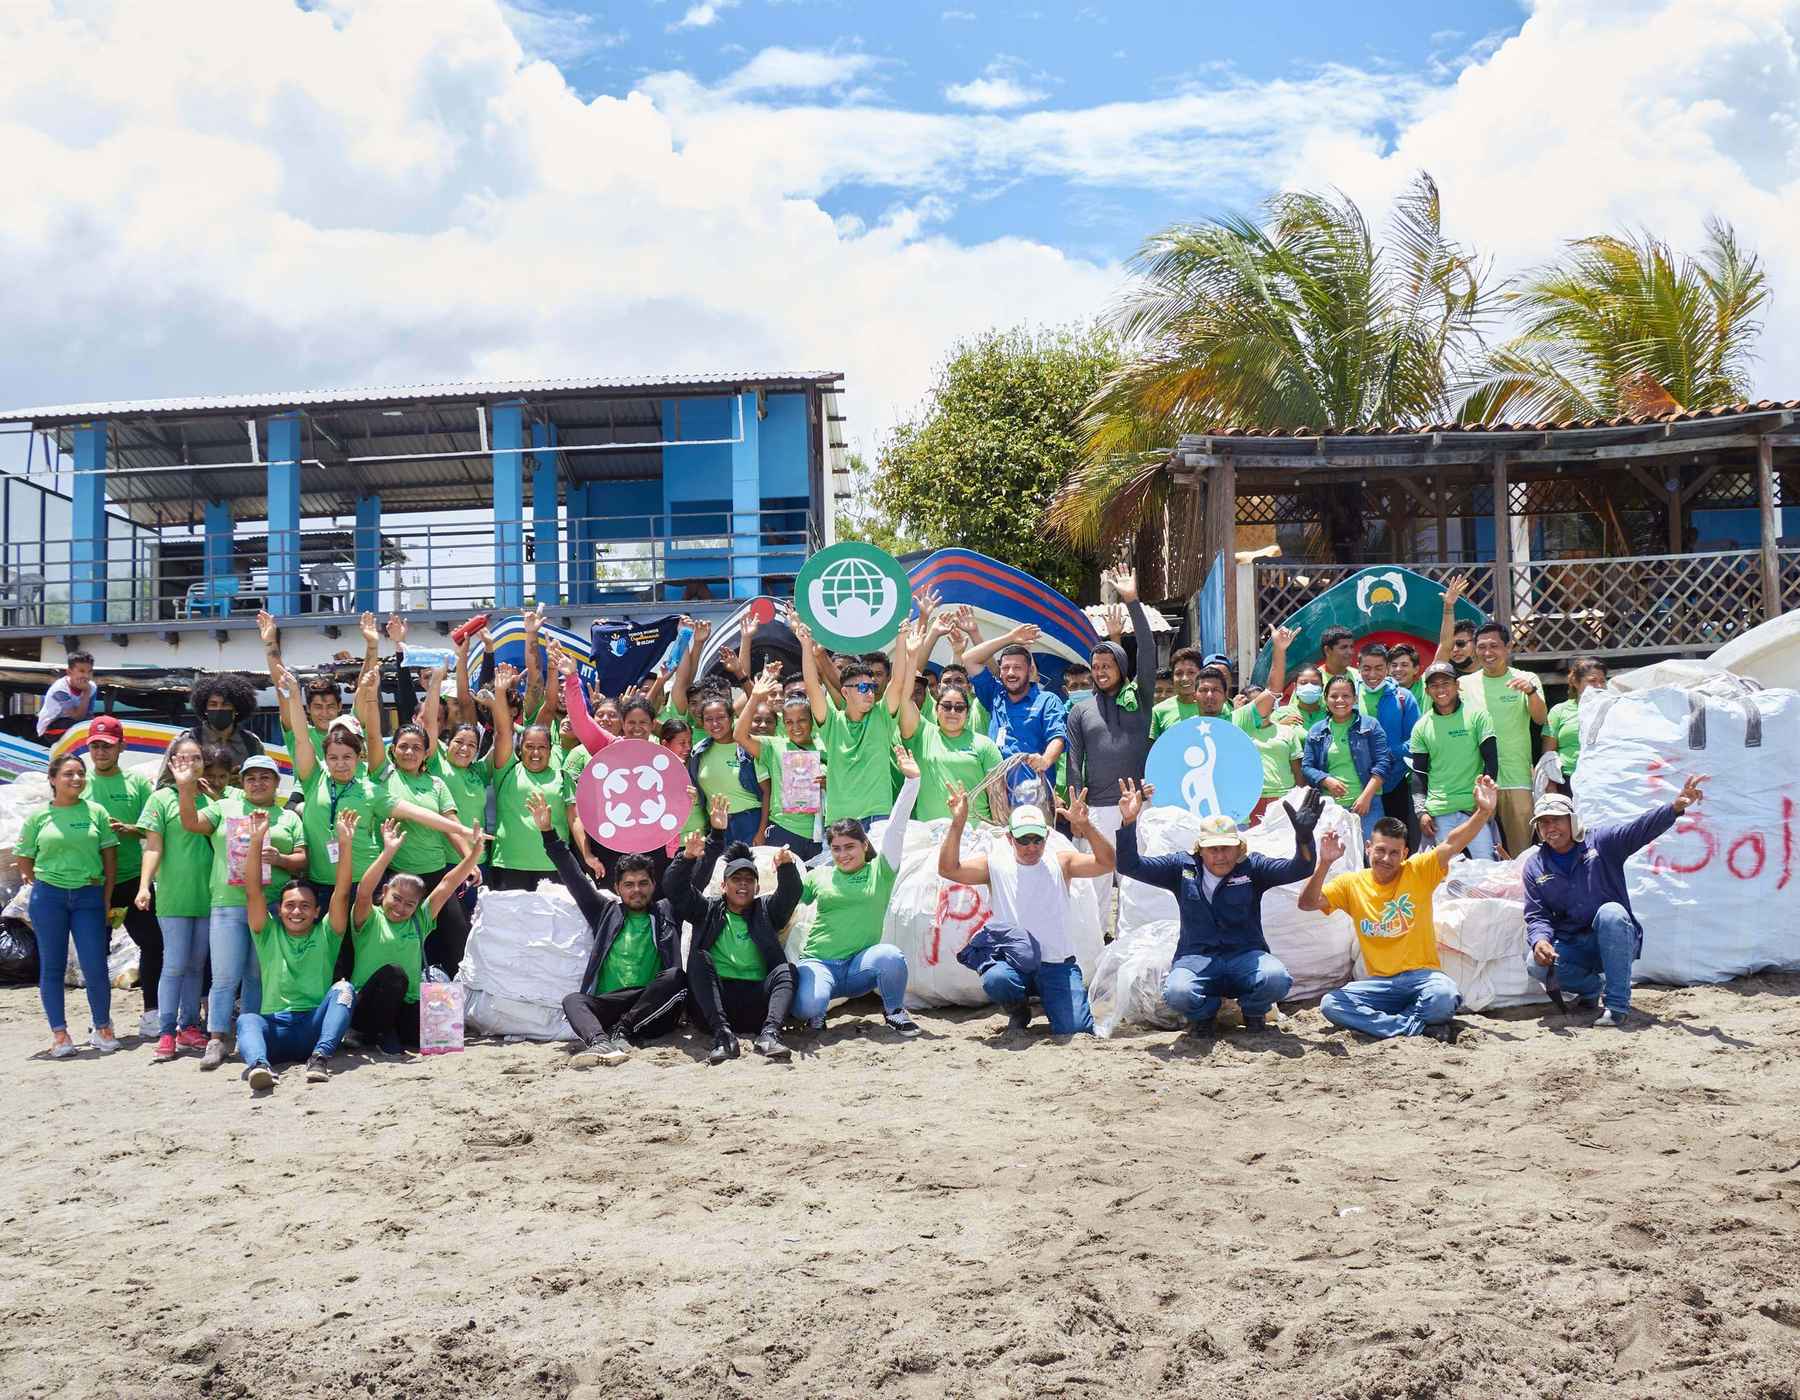 Empleados de Nicaragua están parados en la playa y sonriendo después de limpiar.